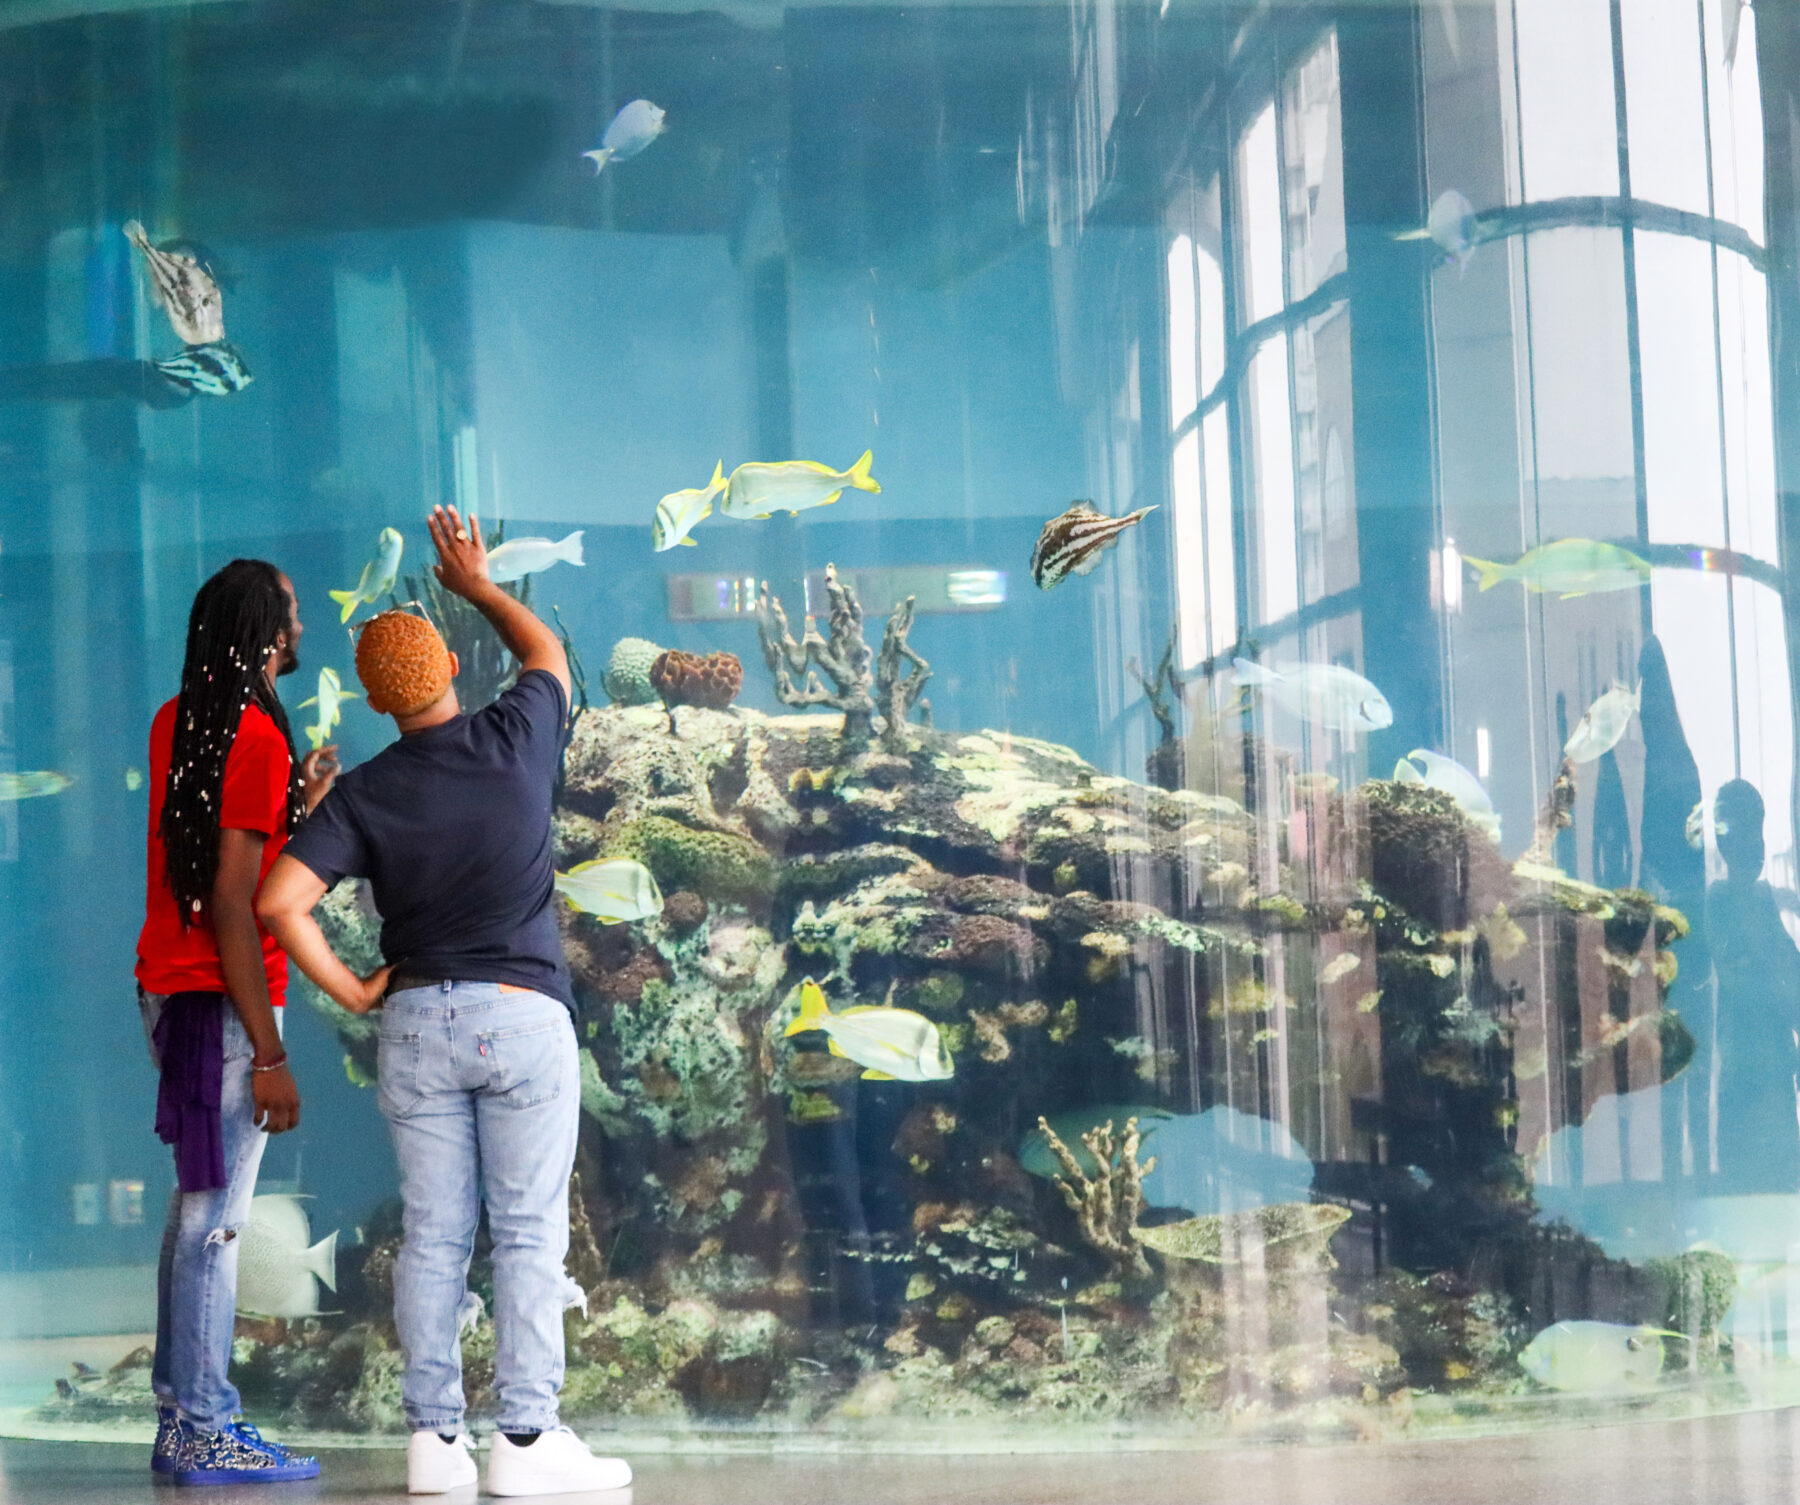 Visit the South Carolina Aquarium